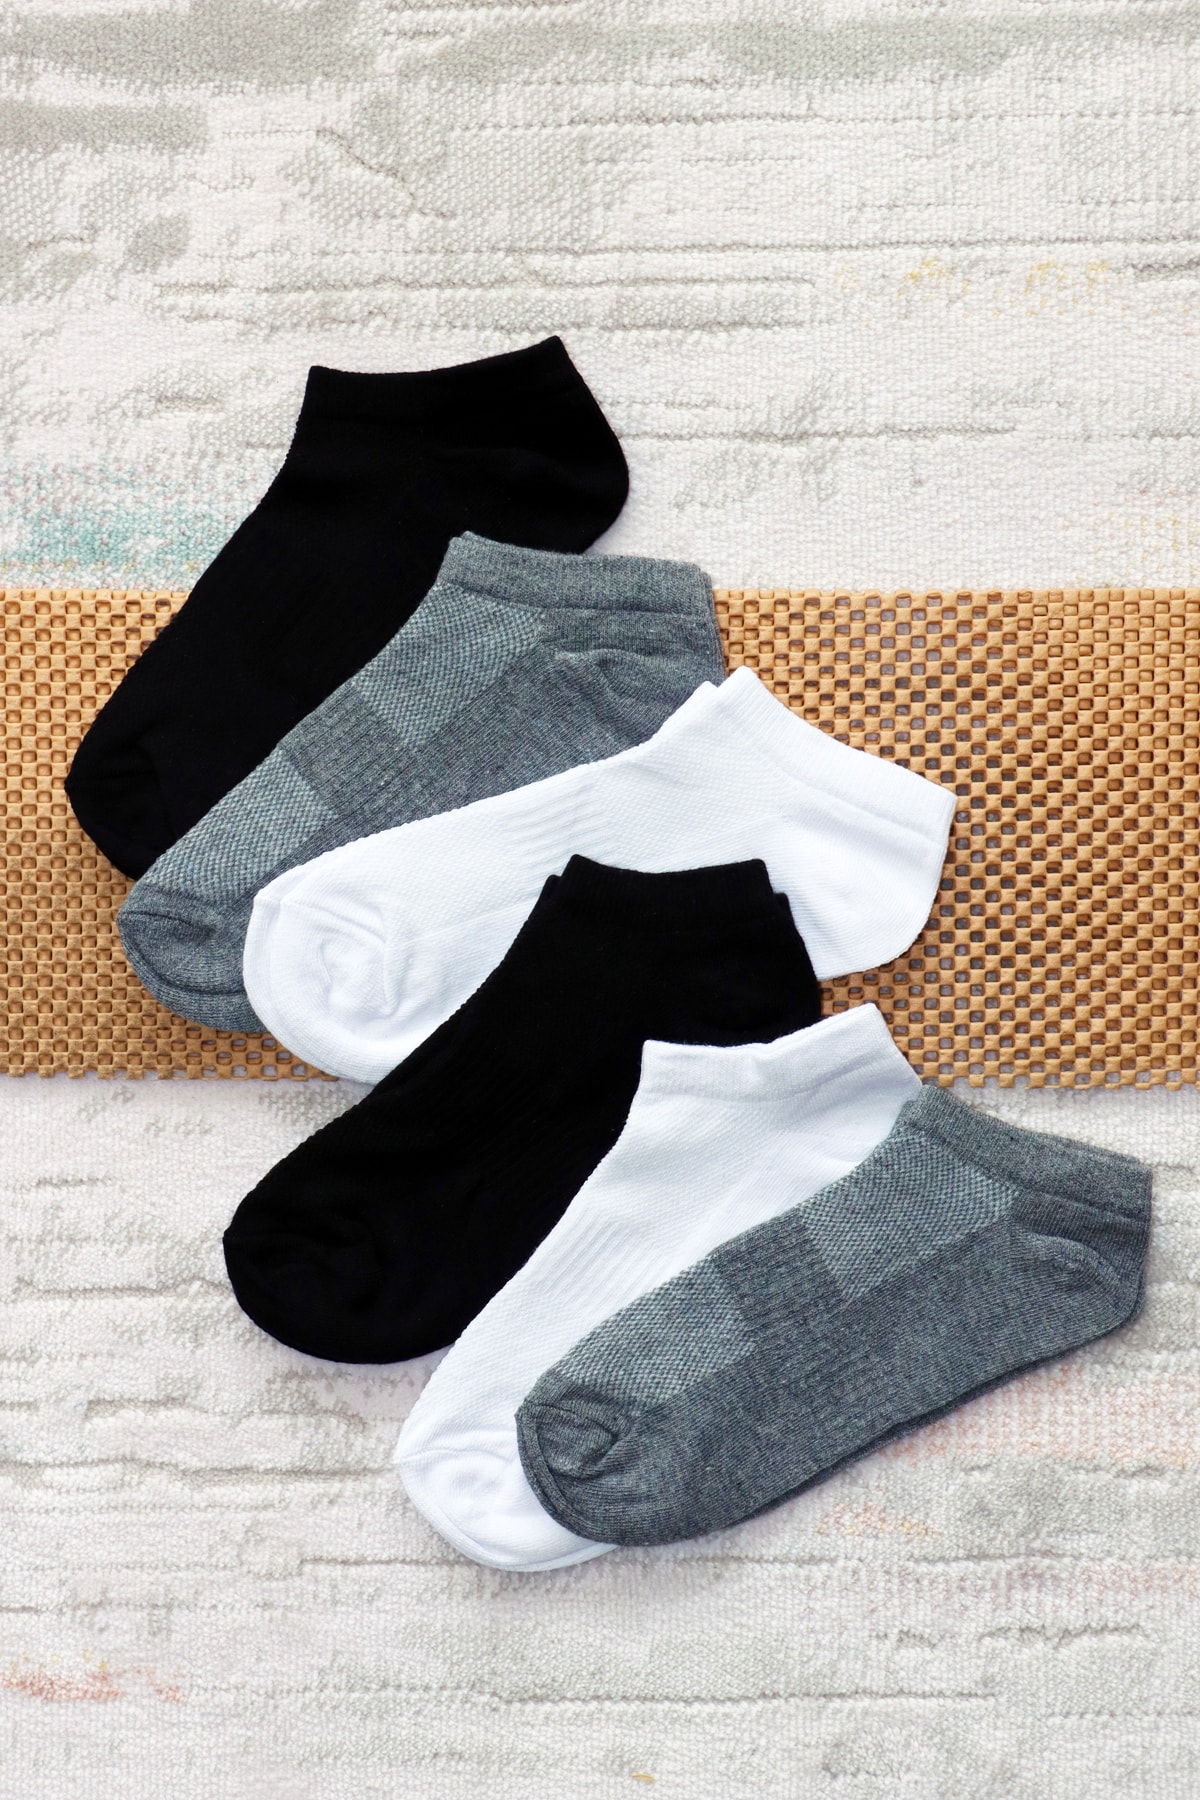 Sensu Iç Giyim File Örgü Unisex 6 Lı Patik Çorap Crp2162